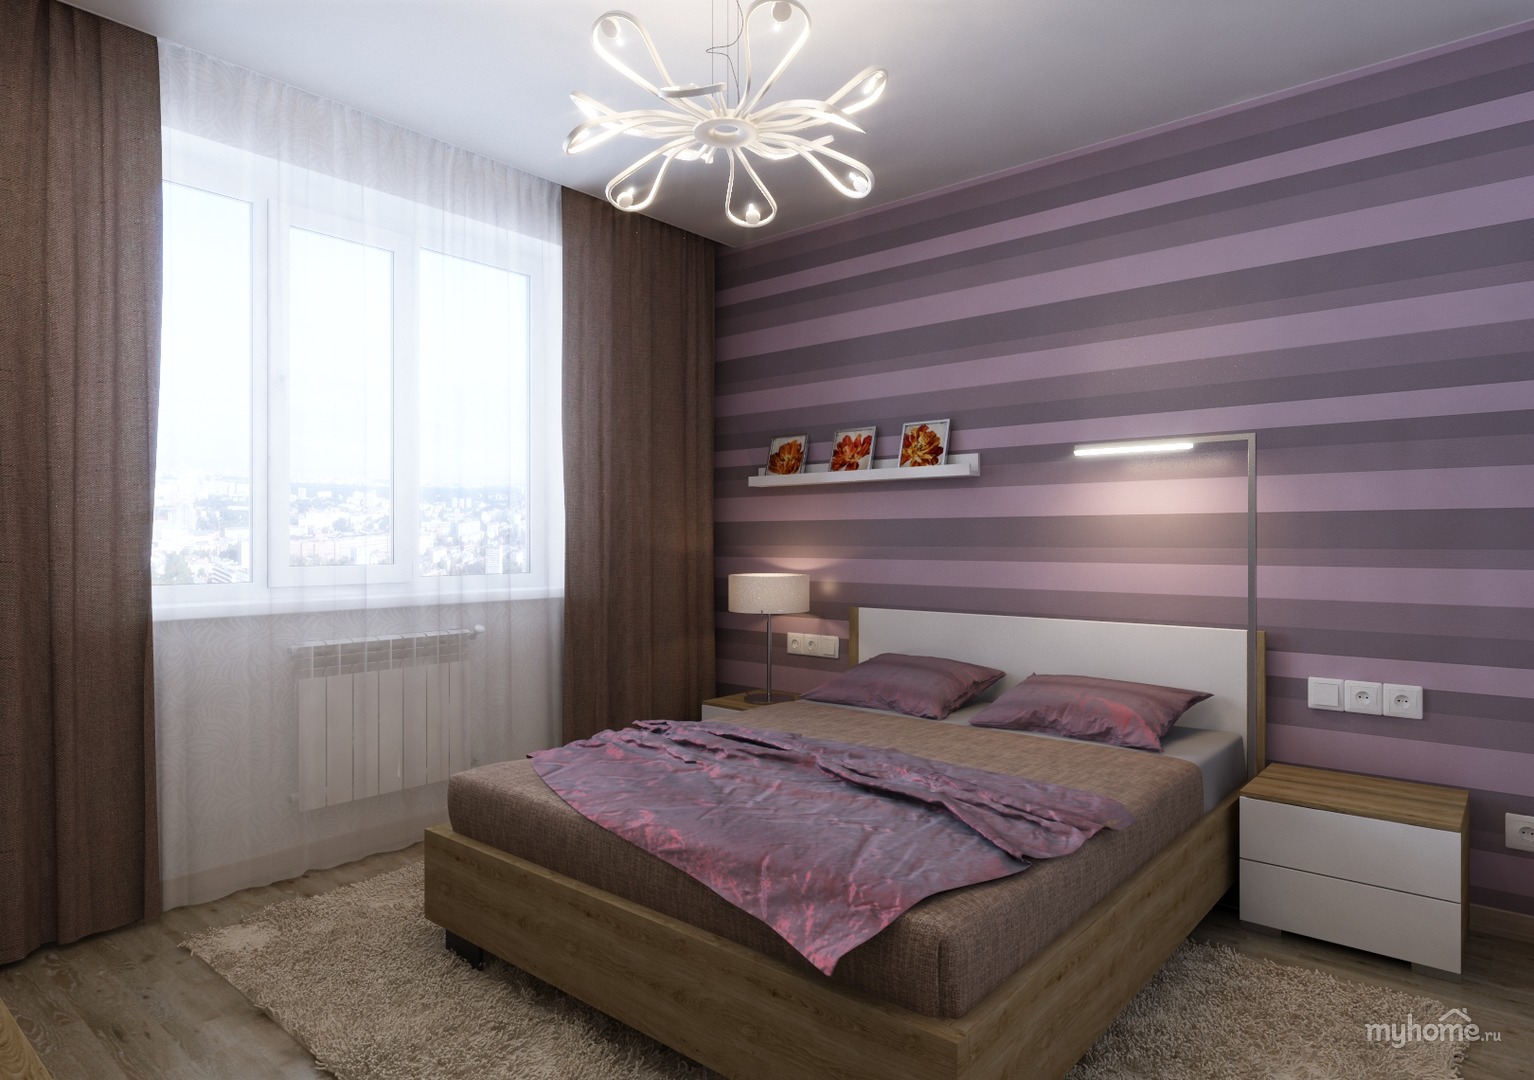 Бежевый и фиолетовый в интерьере спальни